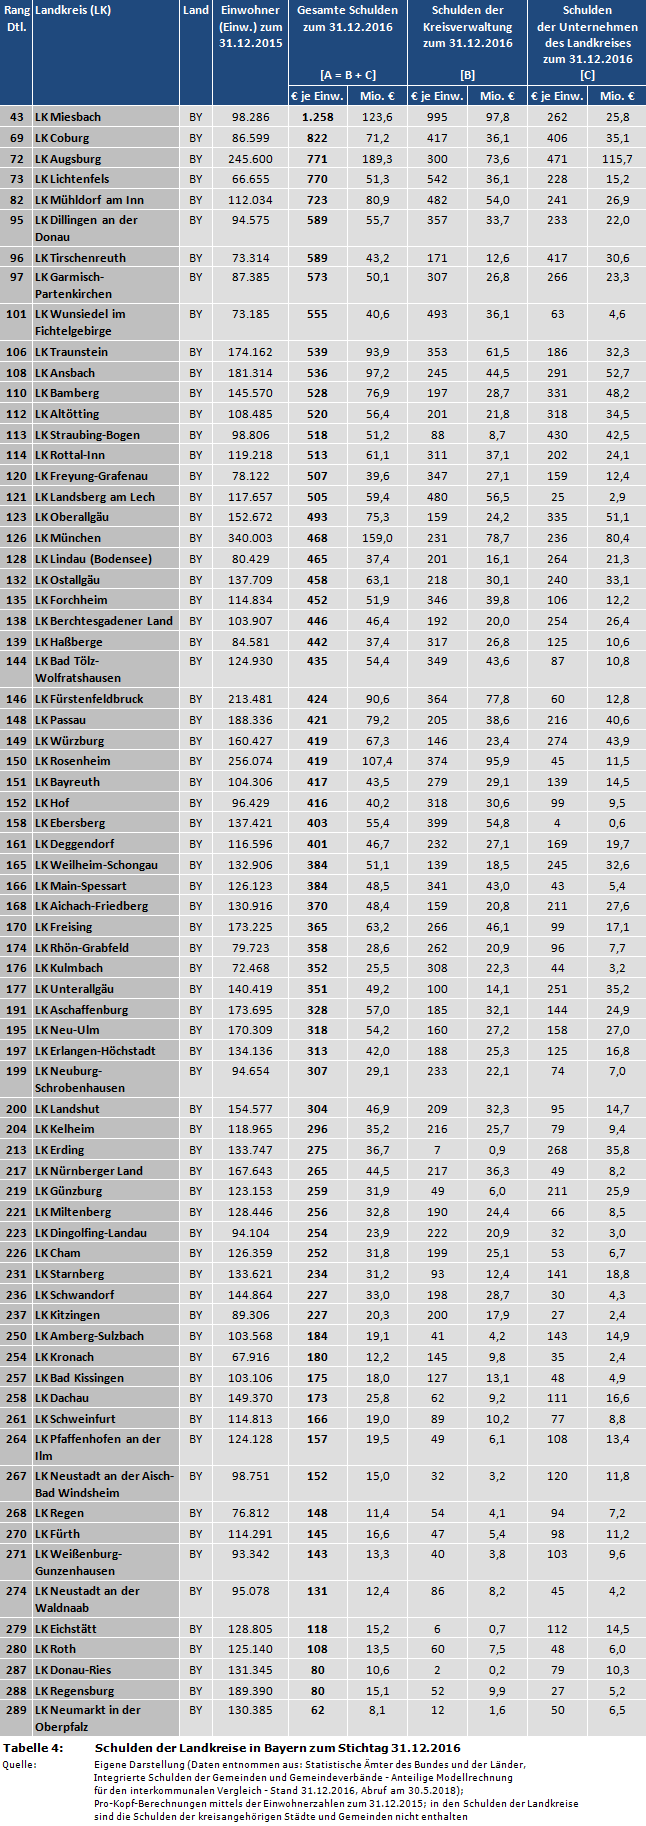 Ranking: Schulden der Landkreise in Bayern zum Stichtag 31.12.2016